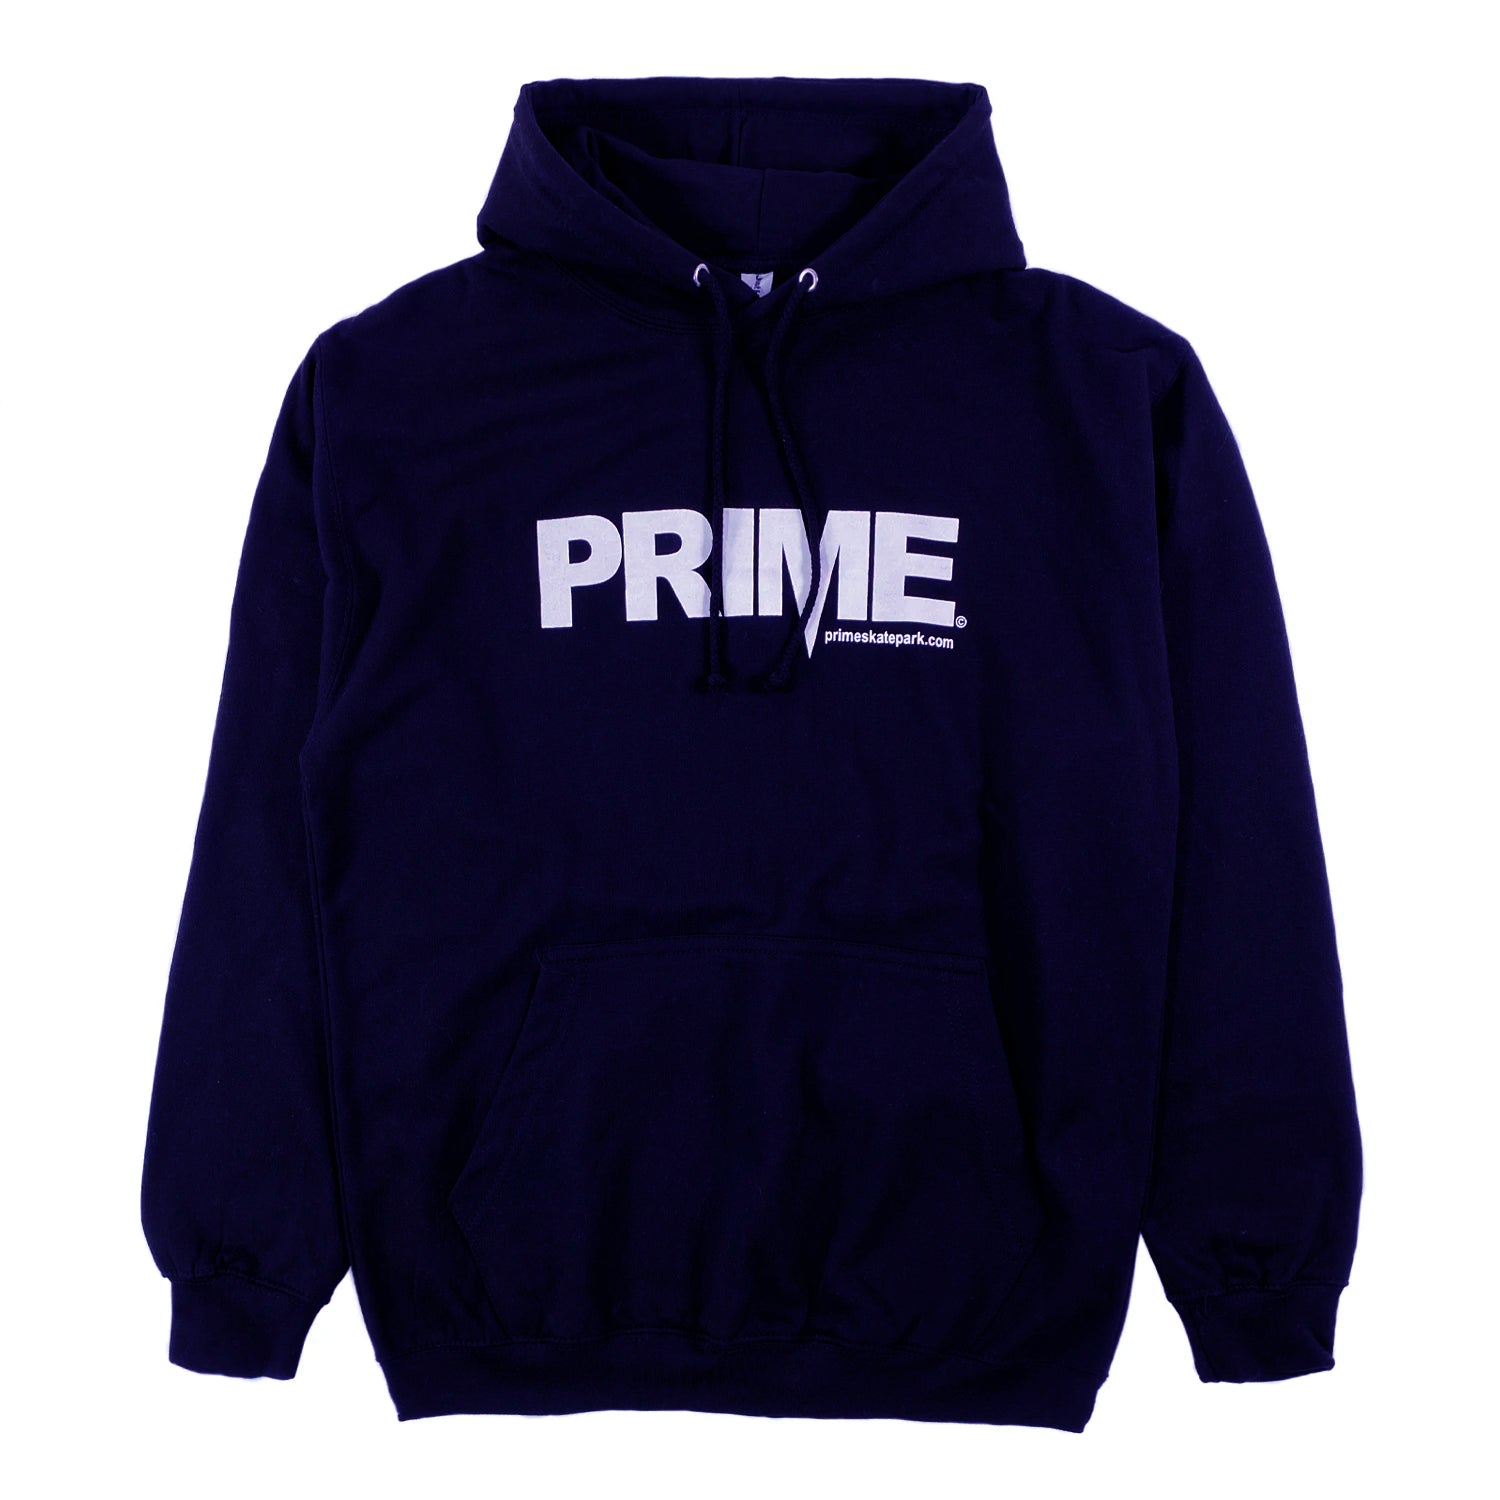 Prime Delux OG Logo Hooded Sweat - Navy / White - Prime Delux Store